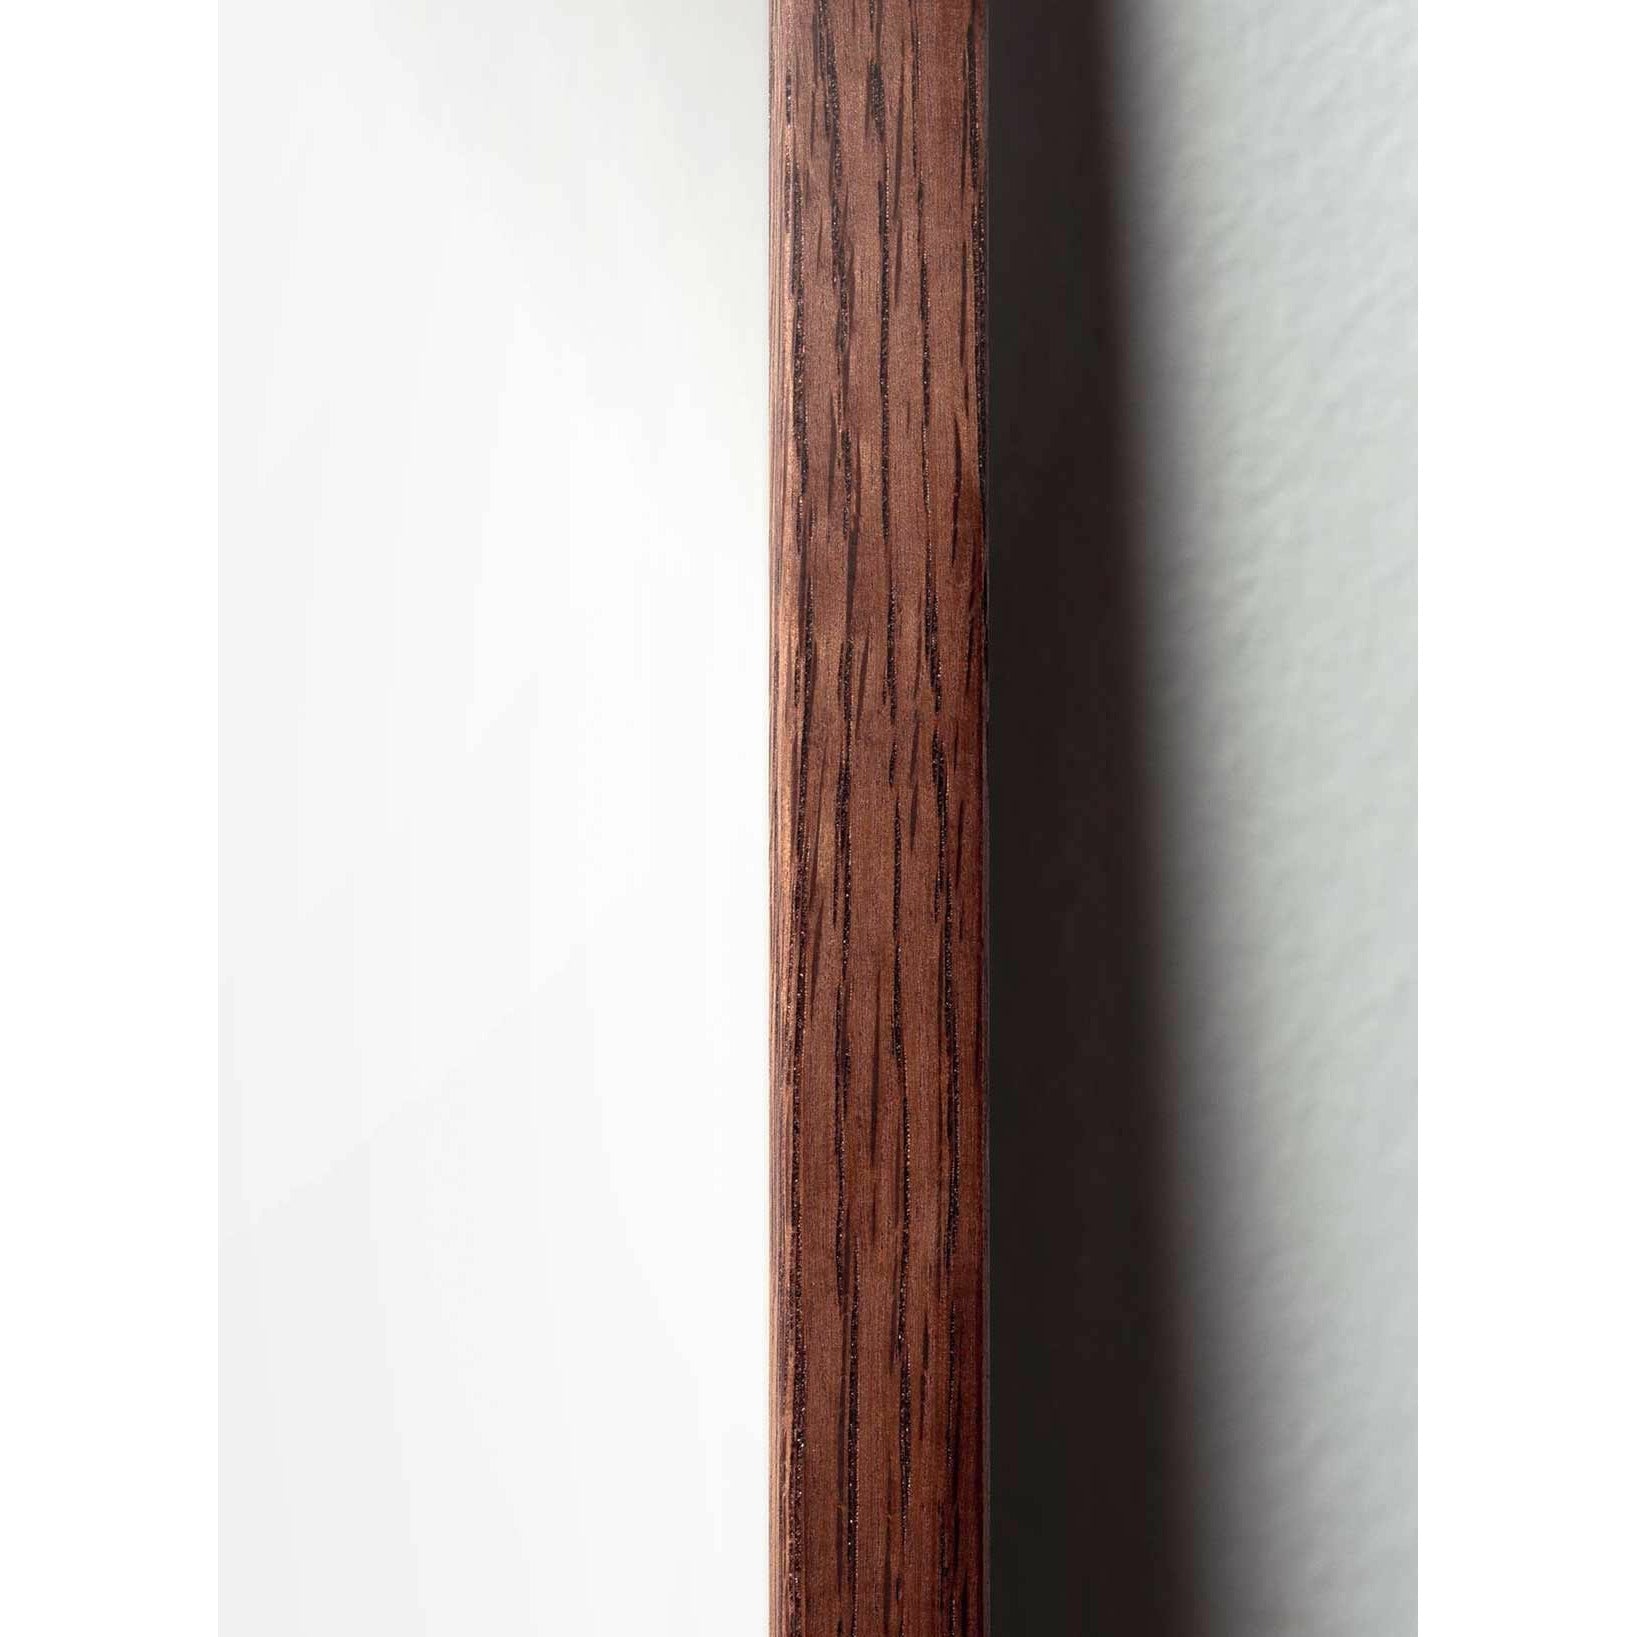 Póster de icono de diseño de hormigas de creación, marco hecho de madera oscura de 70 x100 cm, gris